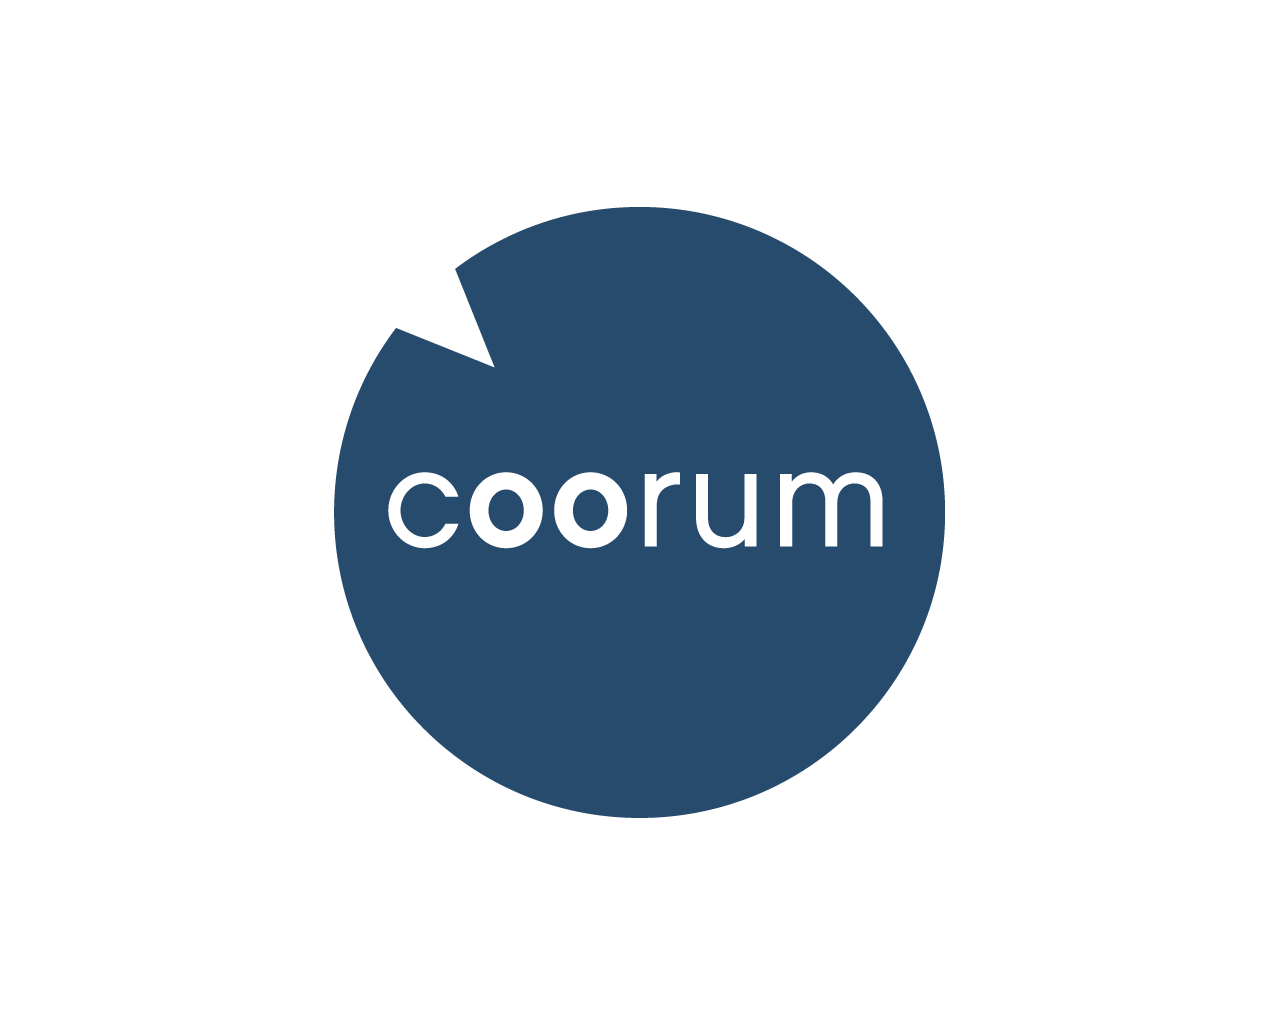 (c) Coorum.com